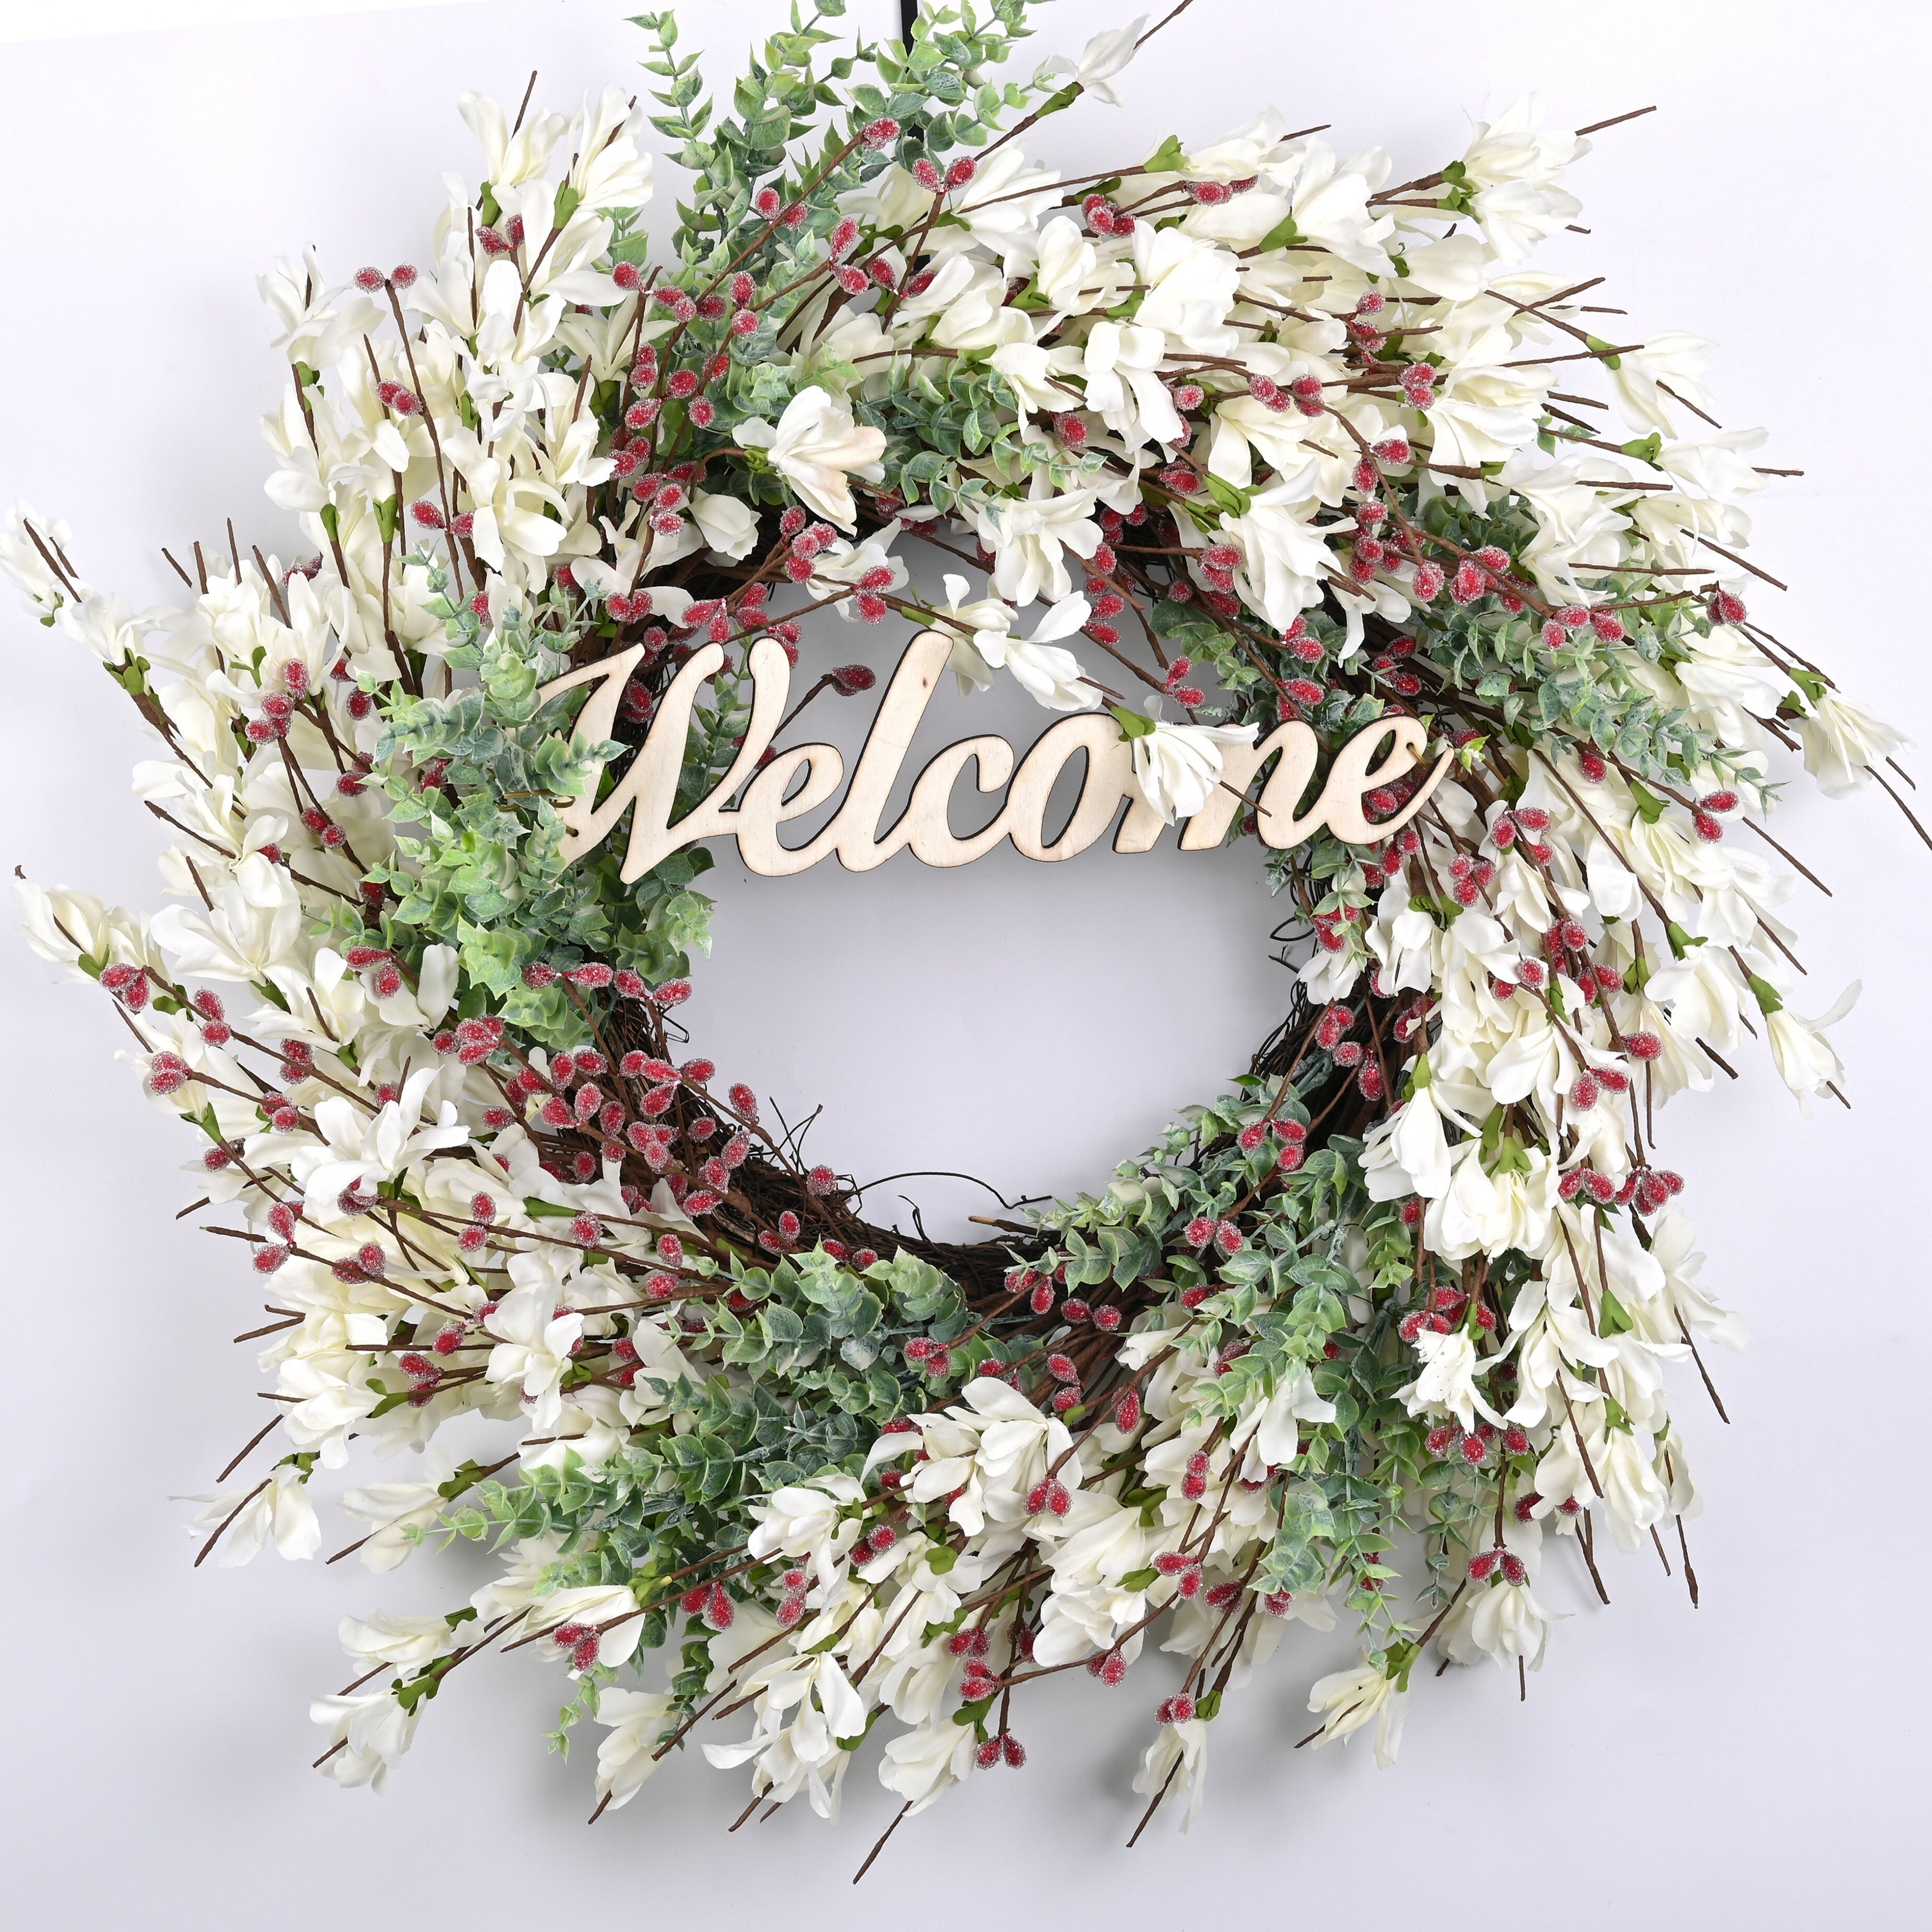 Dried Flowers and Wreaths LLC Nigella Wreath, Size: 22 inch H x 22 inch W x 5 inch D